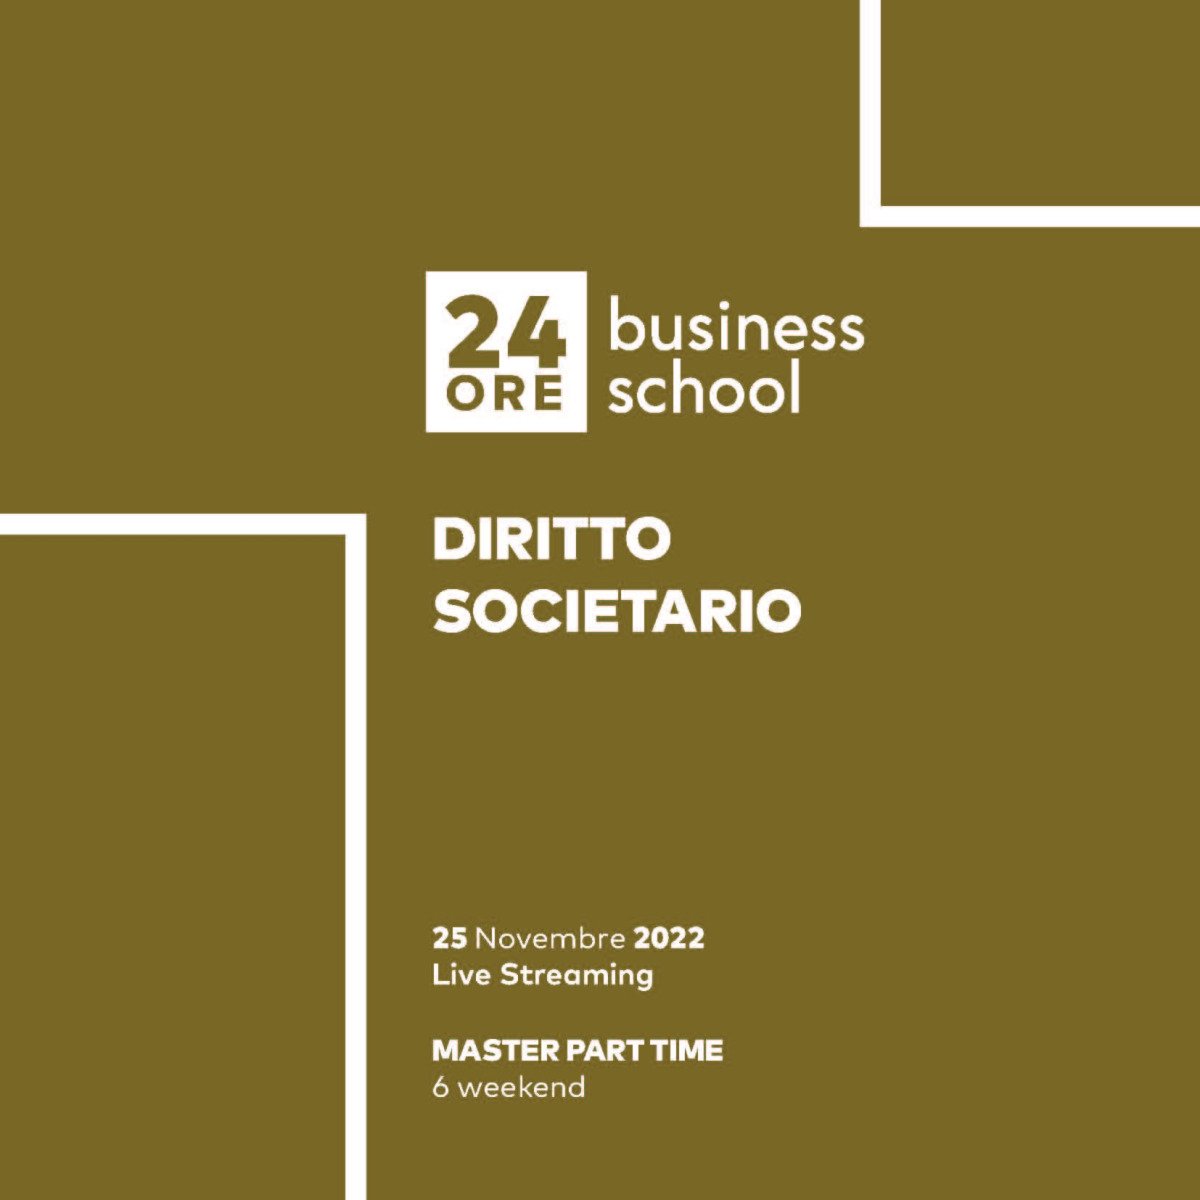 Alessandro Manico è intervenuto come docente al Master "Diritto societario" organizzato da 24ORE Business school per trattare il tema dei sistemi di finanziamento e aspetti patrimoniali delle società di capitali